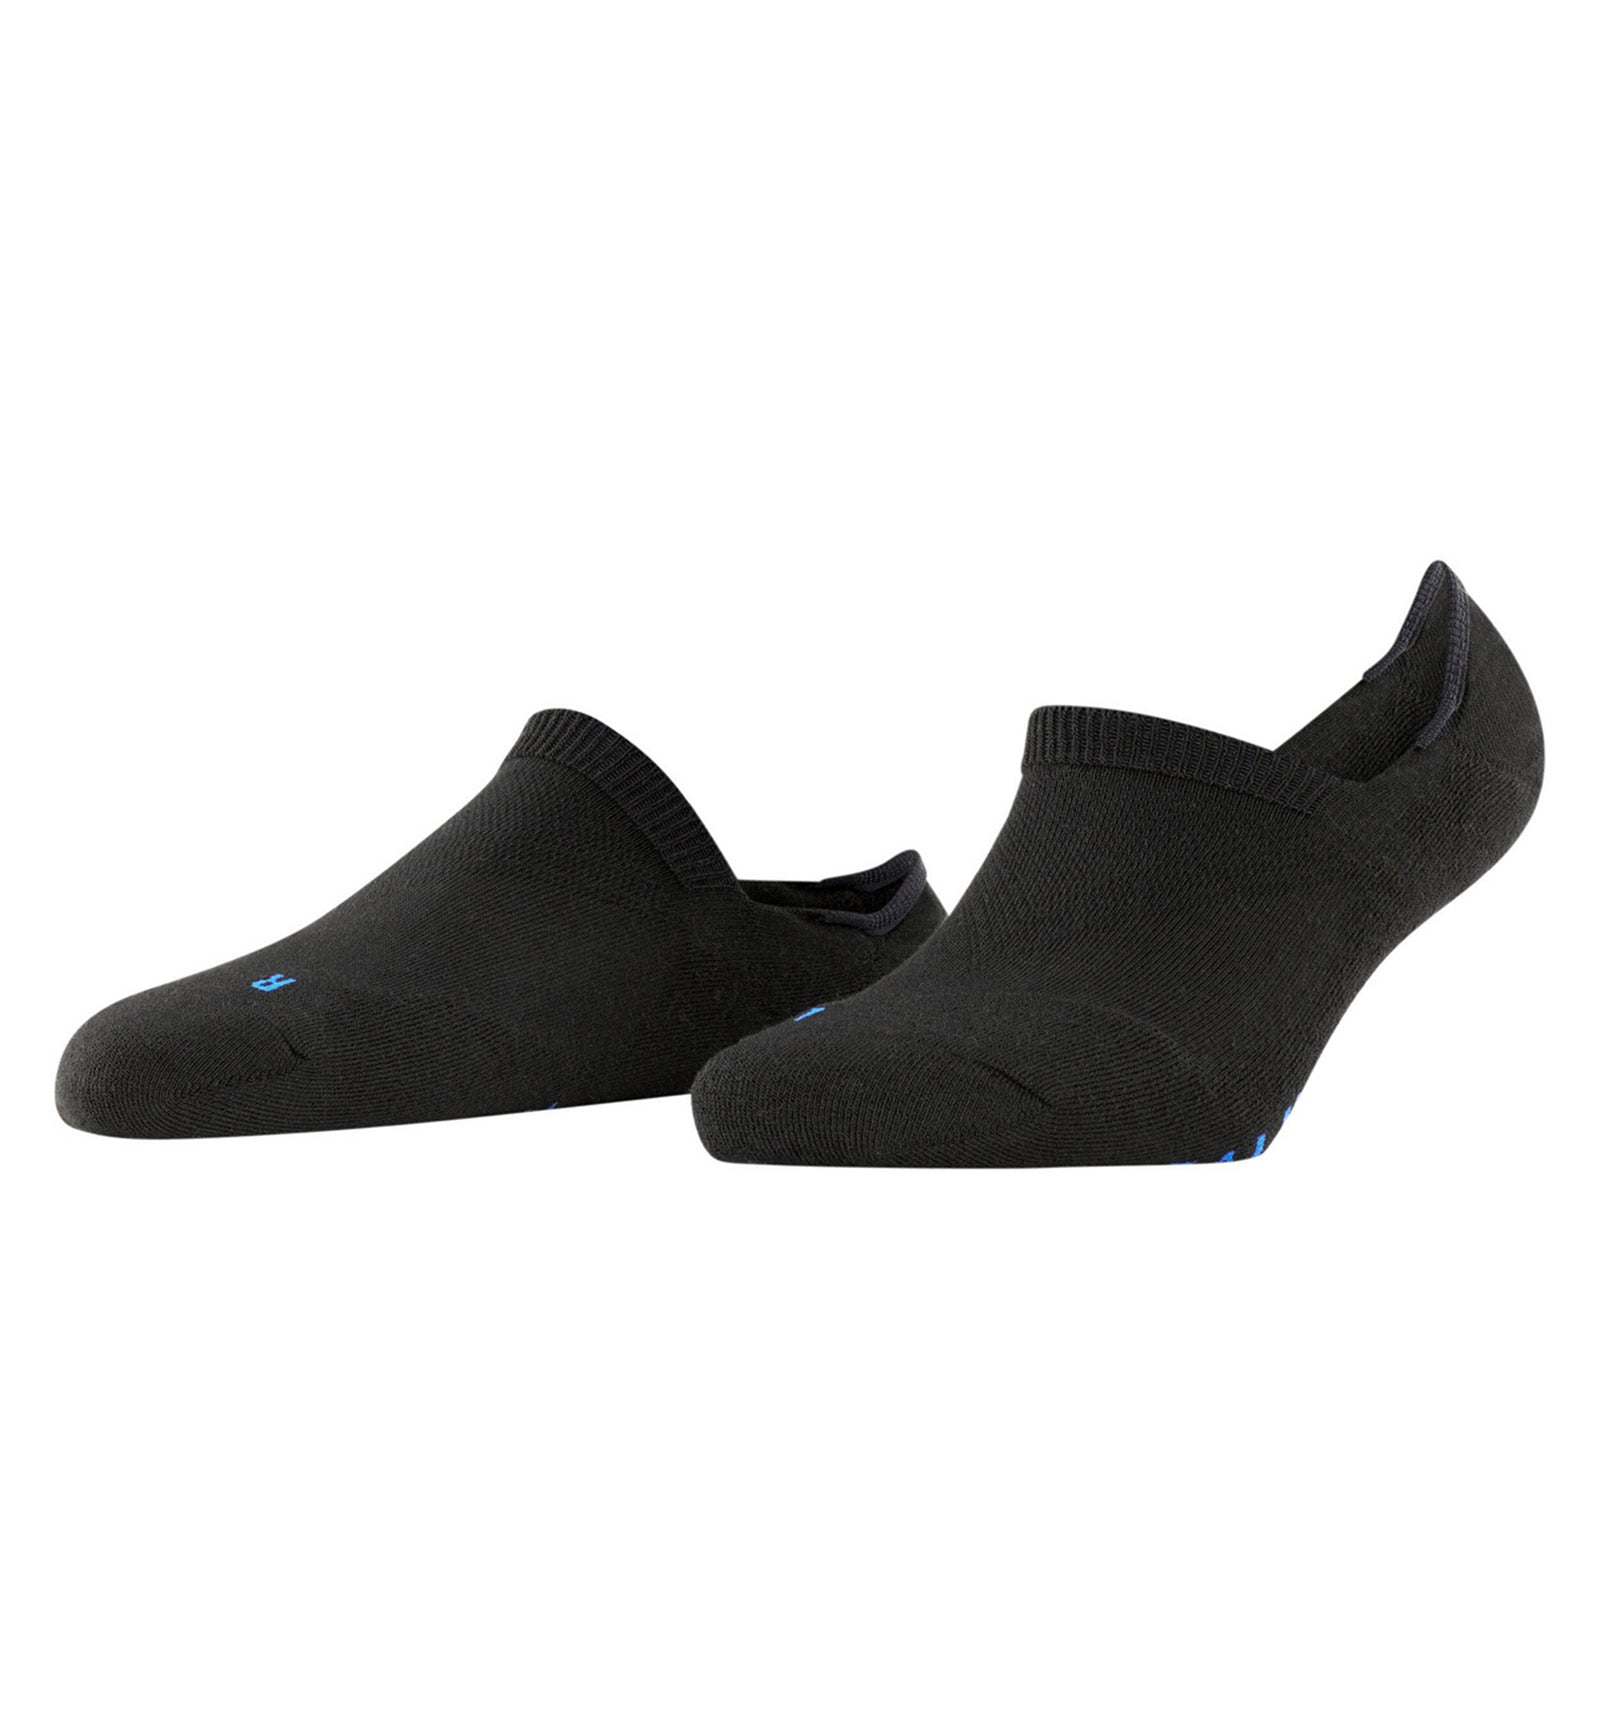 FALKE Cool Kick Invisible Socks (46296),6.5/7.5,Black - Black,6.5/7.5